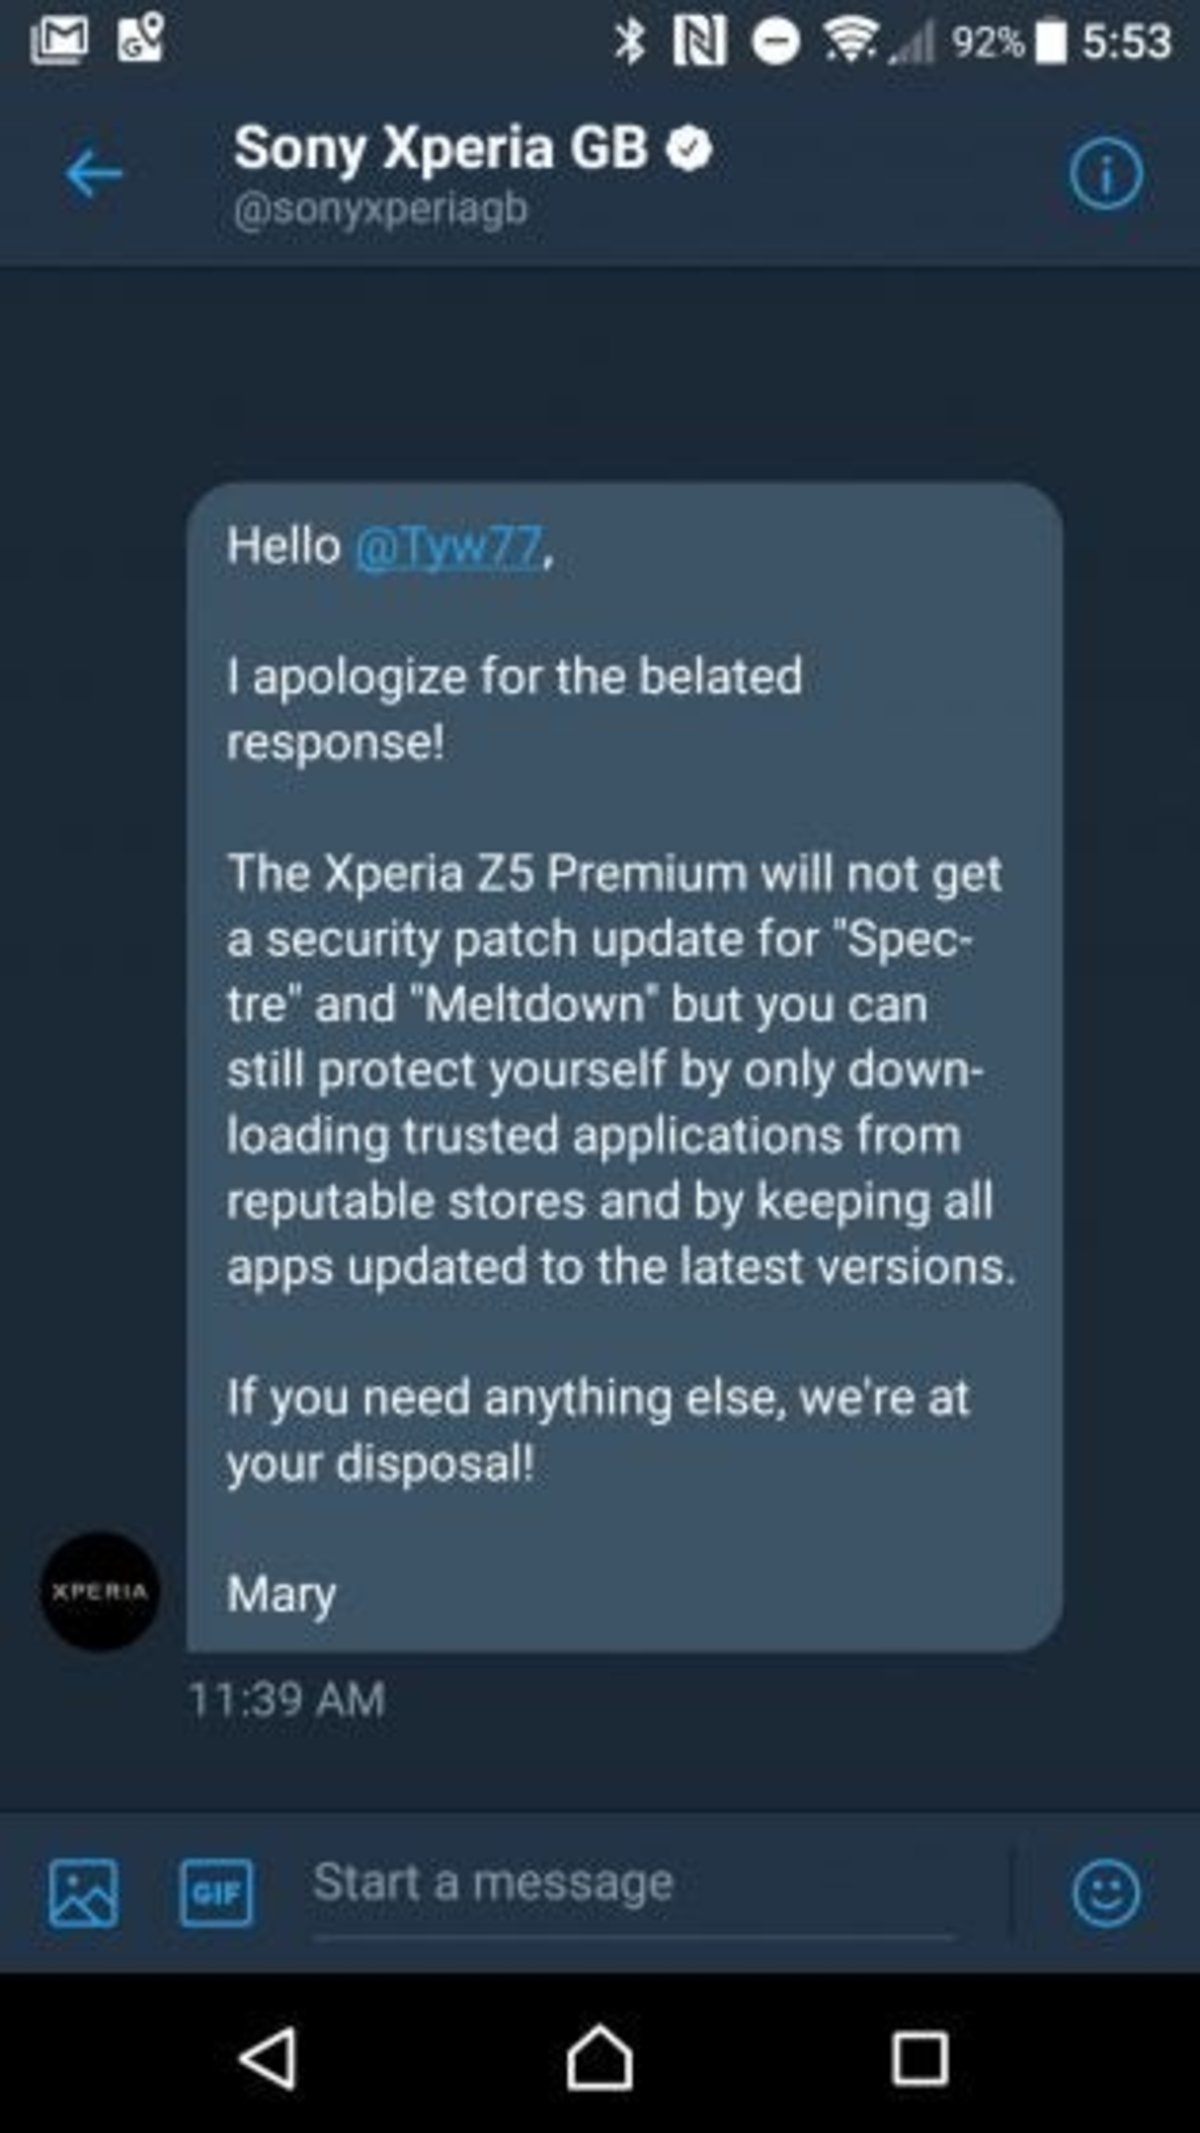 Xperia-Z5-Premium-Spectre-Meltdown-315x560